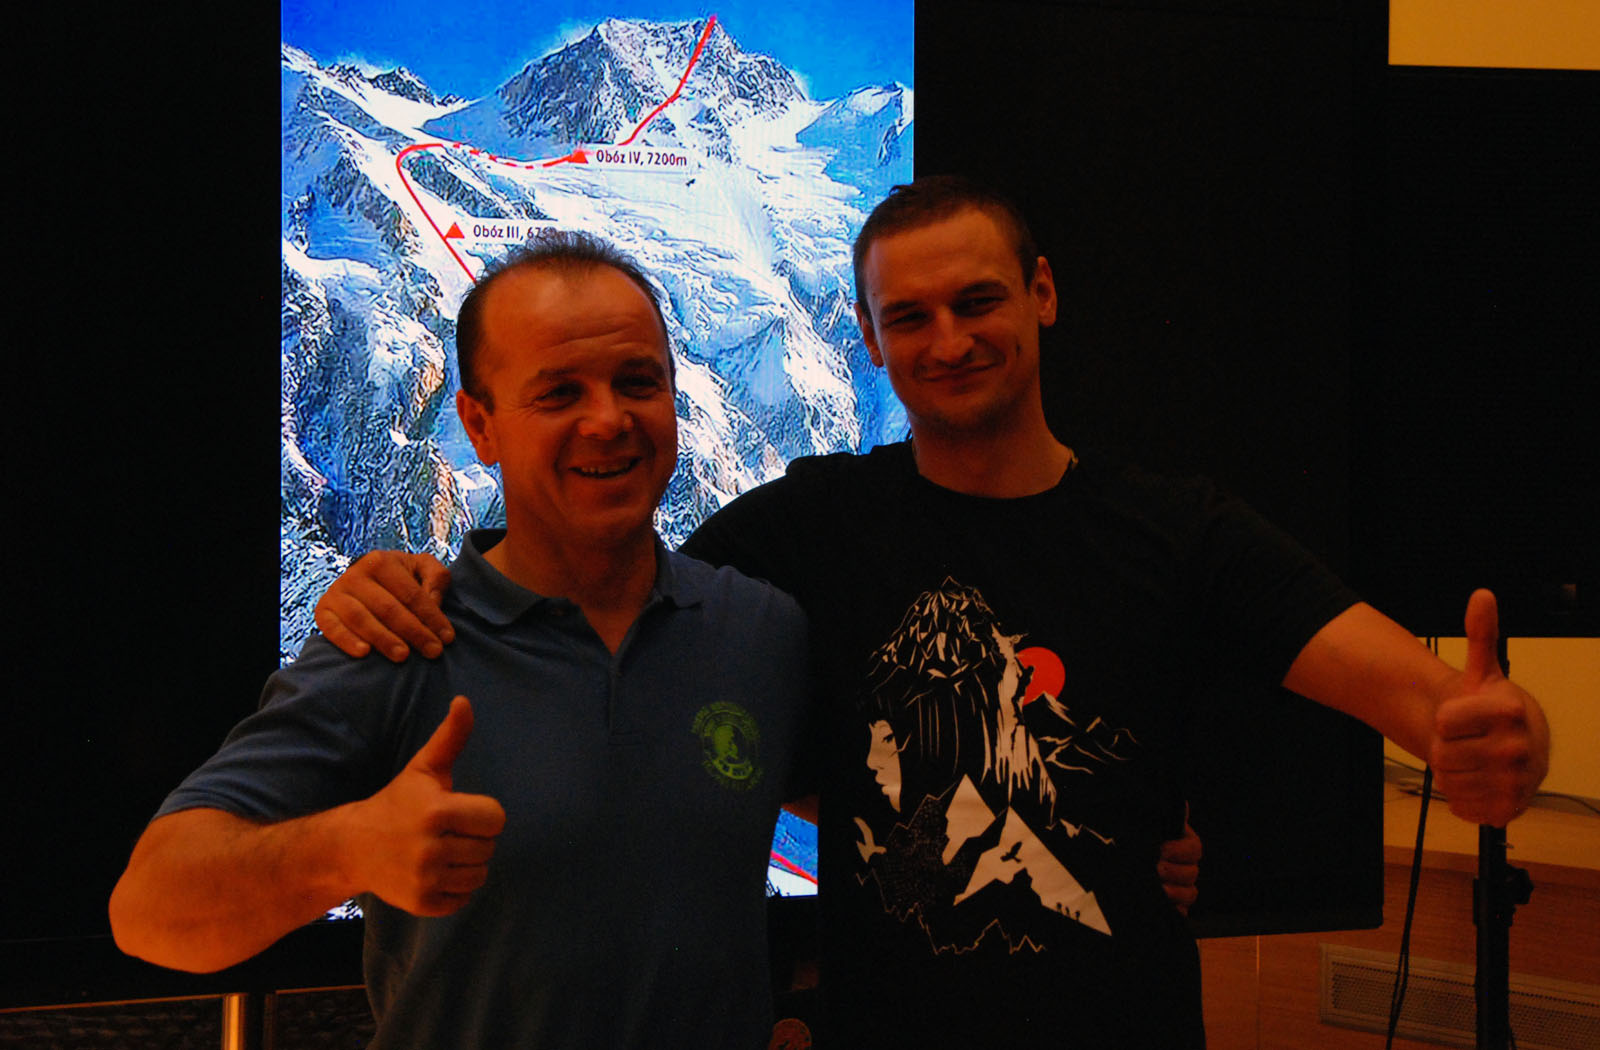 Ячек Чех (Jacek Czech) и Адам Белецкий (Adam Bielecki) на презентации экспедиции, ноябрь 2015